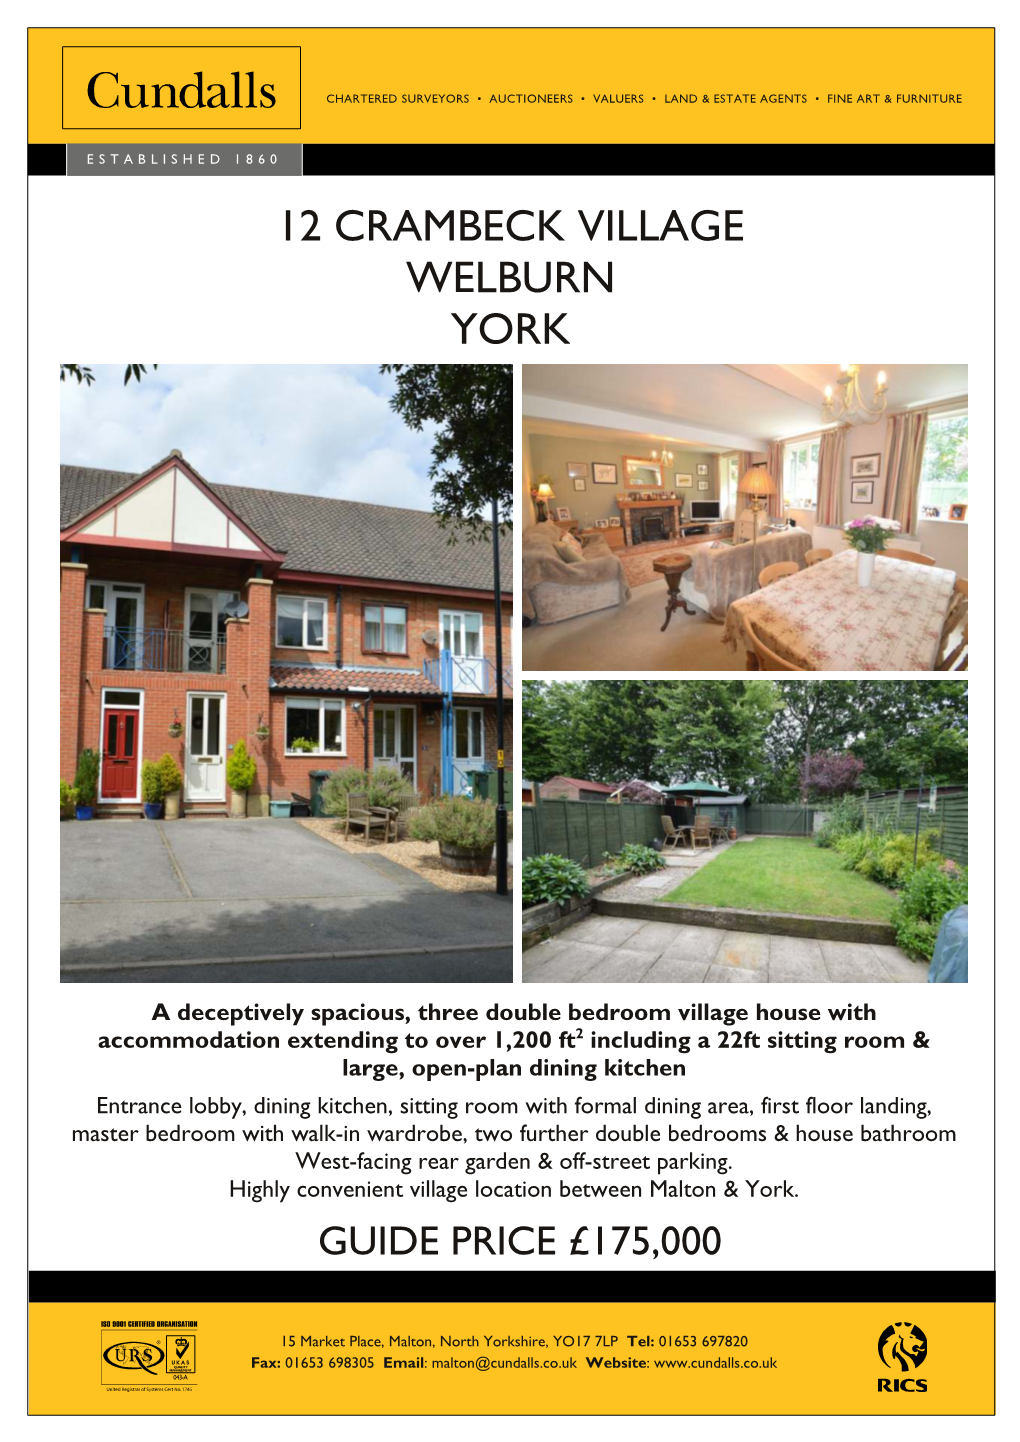 12 Crambeck Village Welburn York